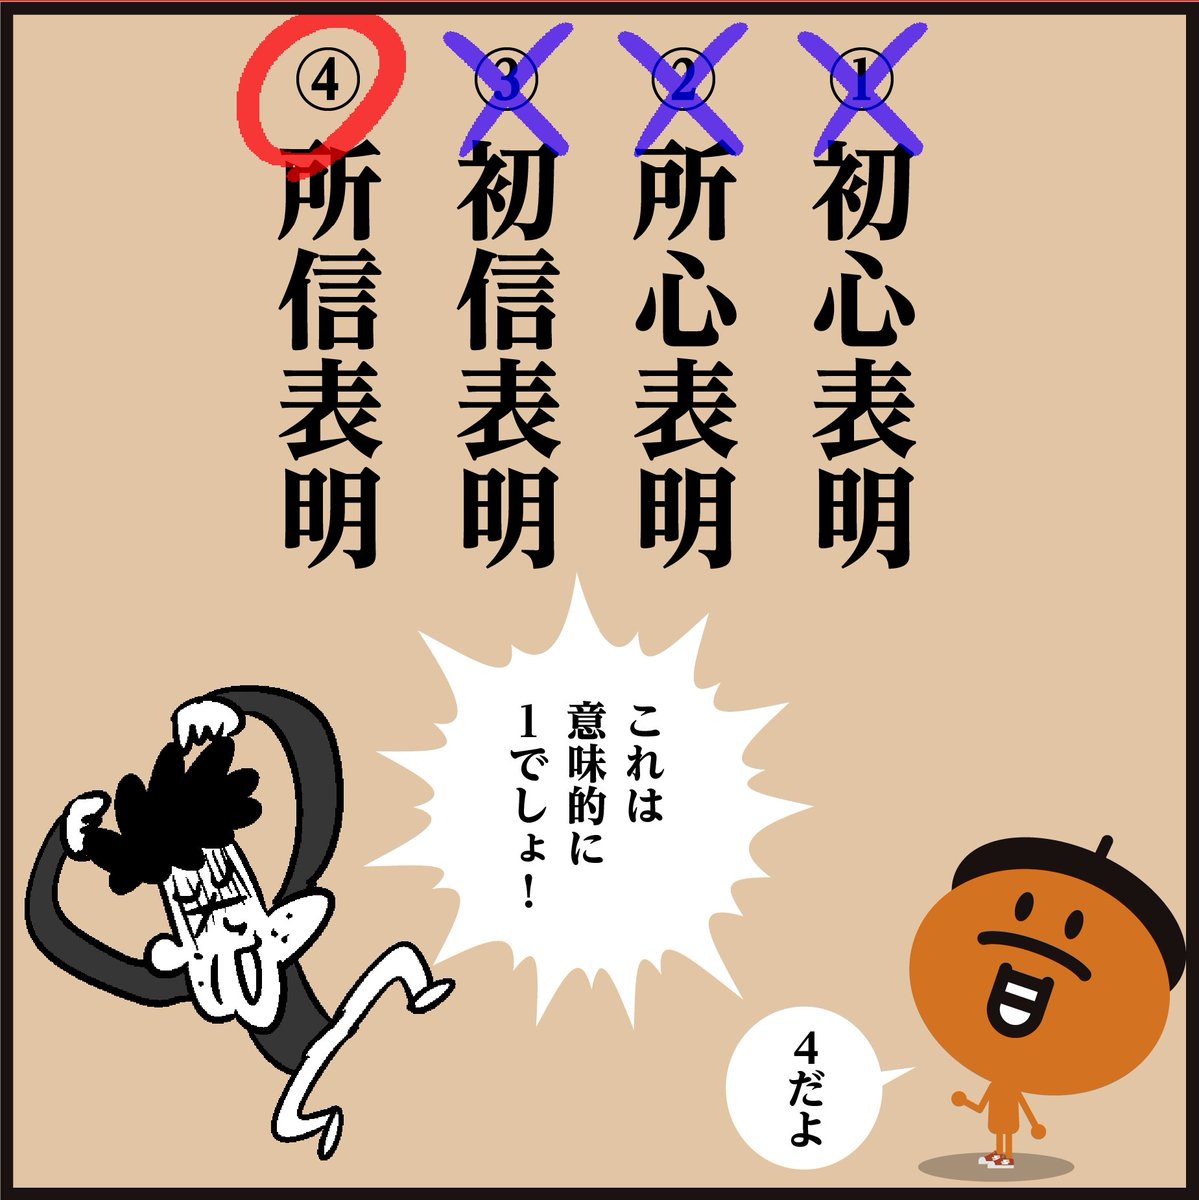 漢字「 しょしんひょうめい 」
どーれだ? <4コマ漫画>
#イラスト #クイズ #勉強 